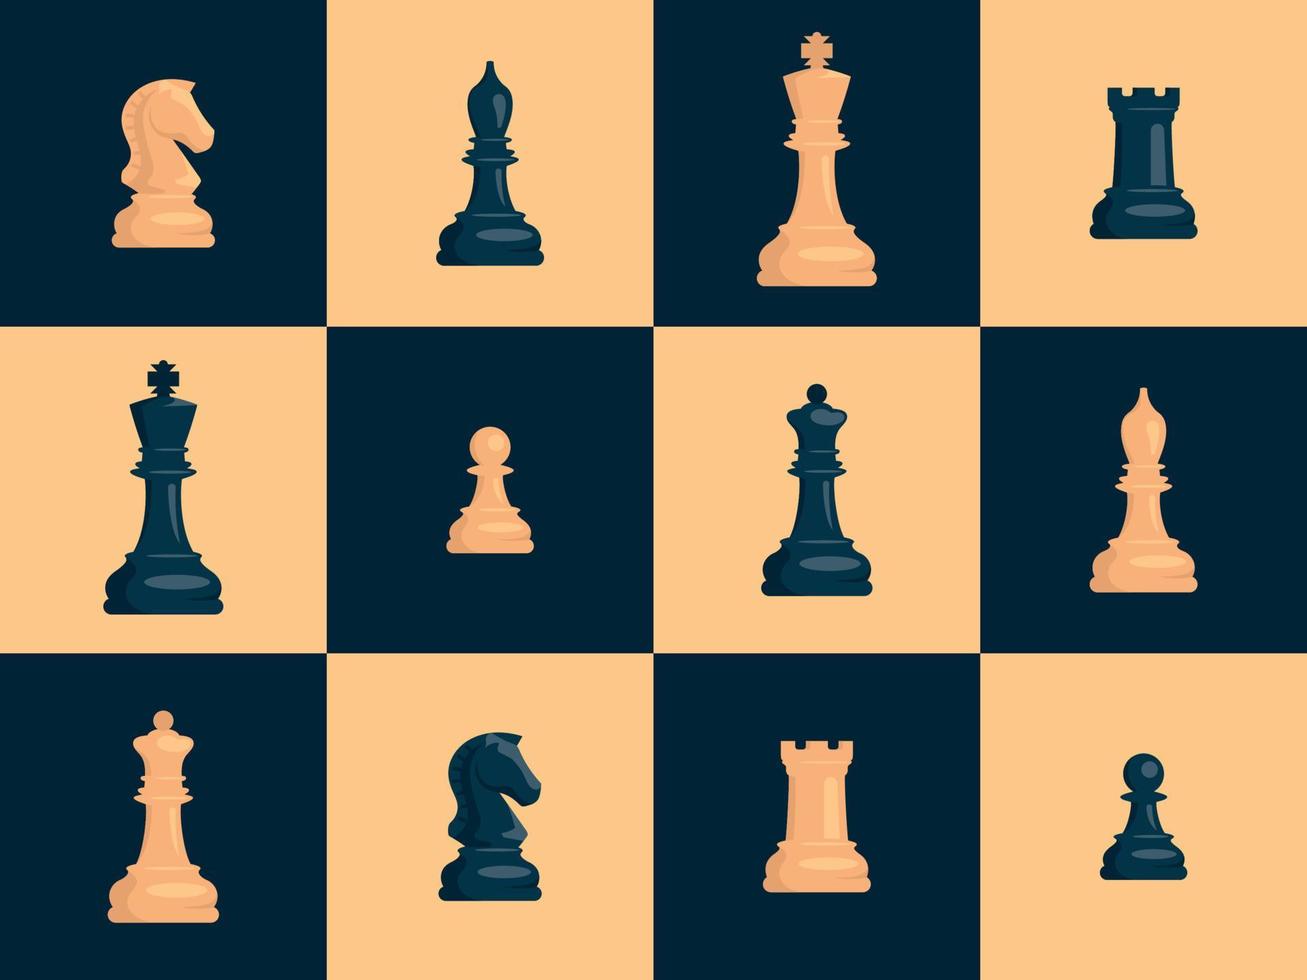 ajedrez. juego de piezas de ajedrez blancas y negras. caballo, torre, peón, alfil, rey, reina. imagen vectorial vector